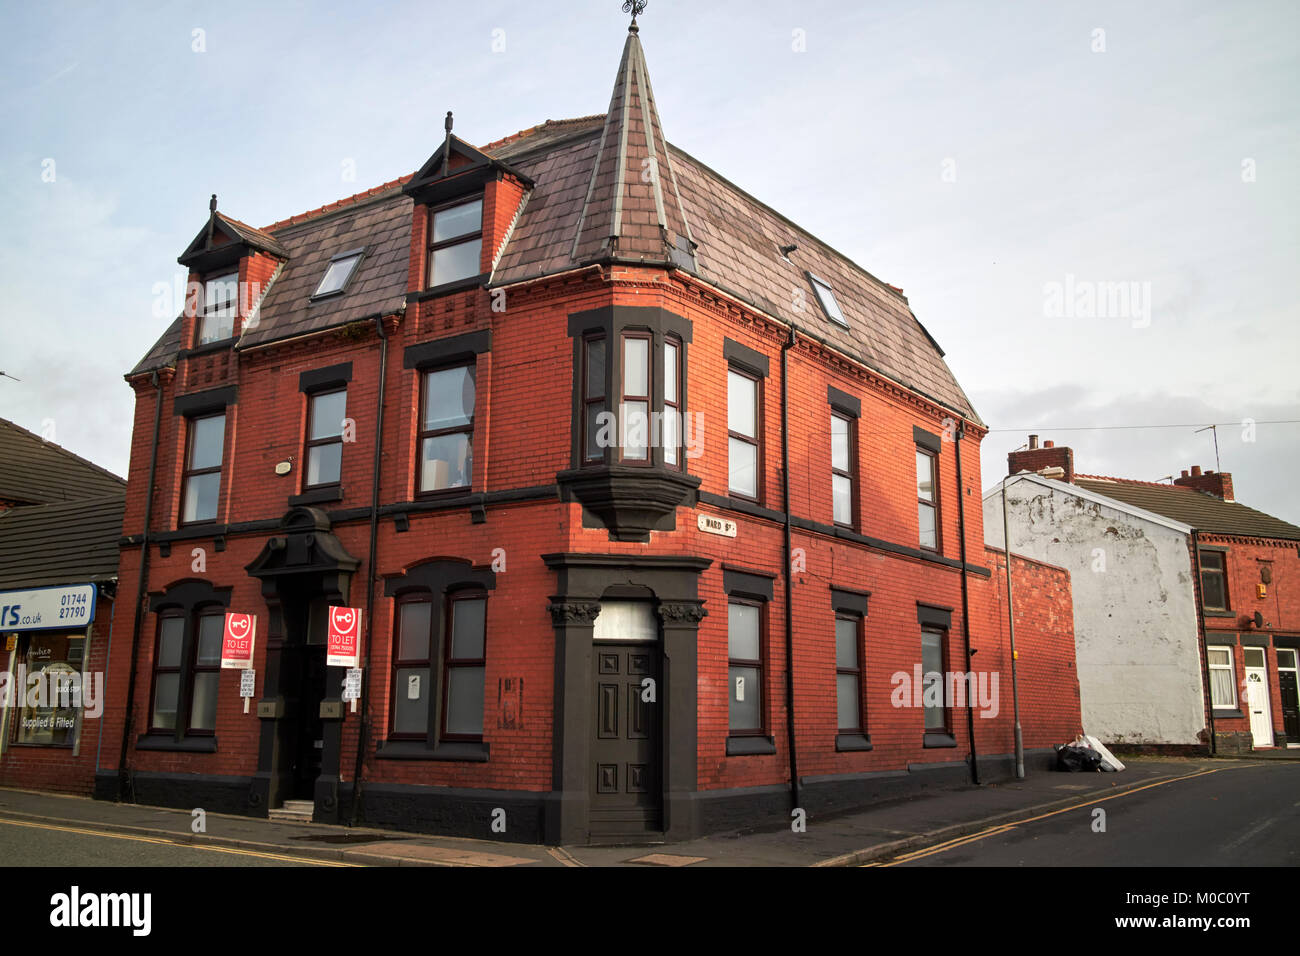 Antiguo edificio victoriano de ladrillo rojo con la arquitectura ornamental en el cruce de la calle Ward y 36 north road St Helens merseyside uk Foto de stock